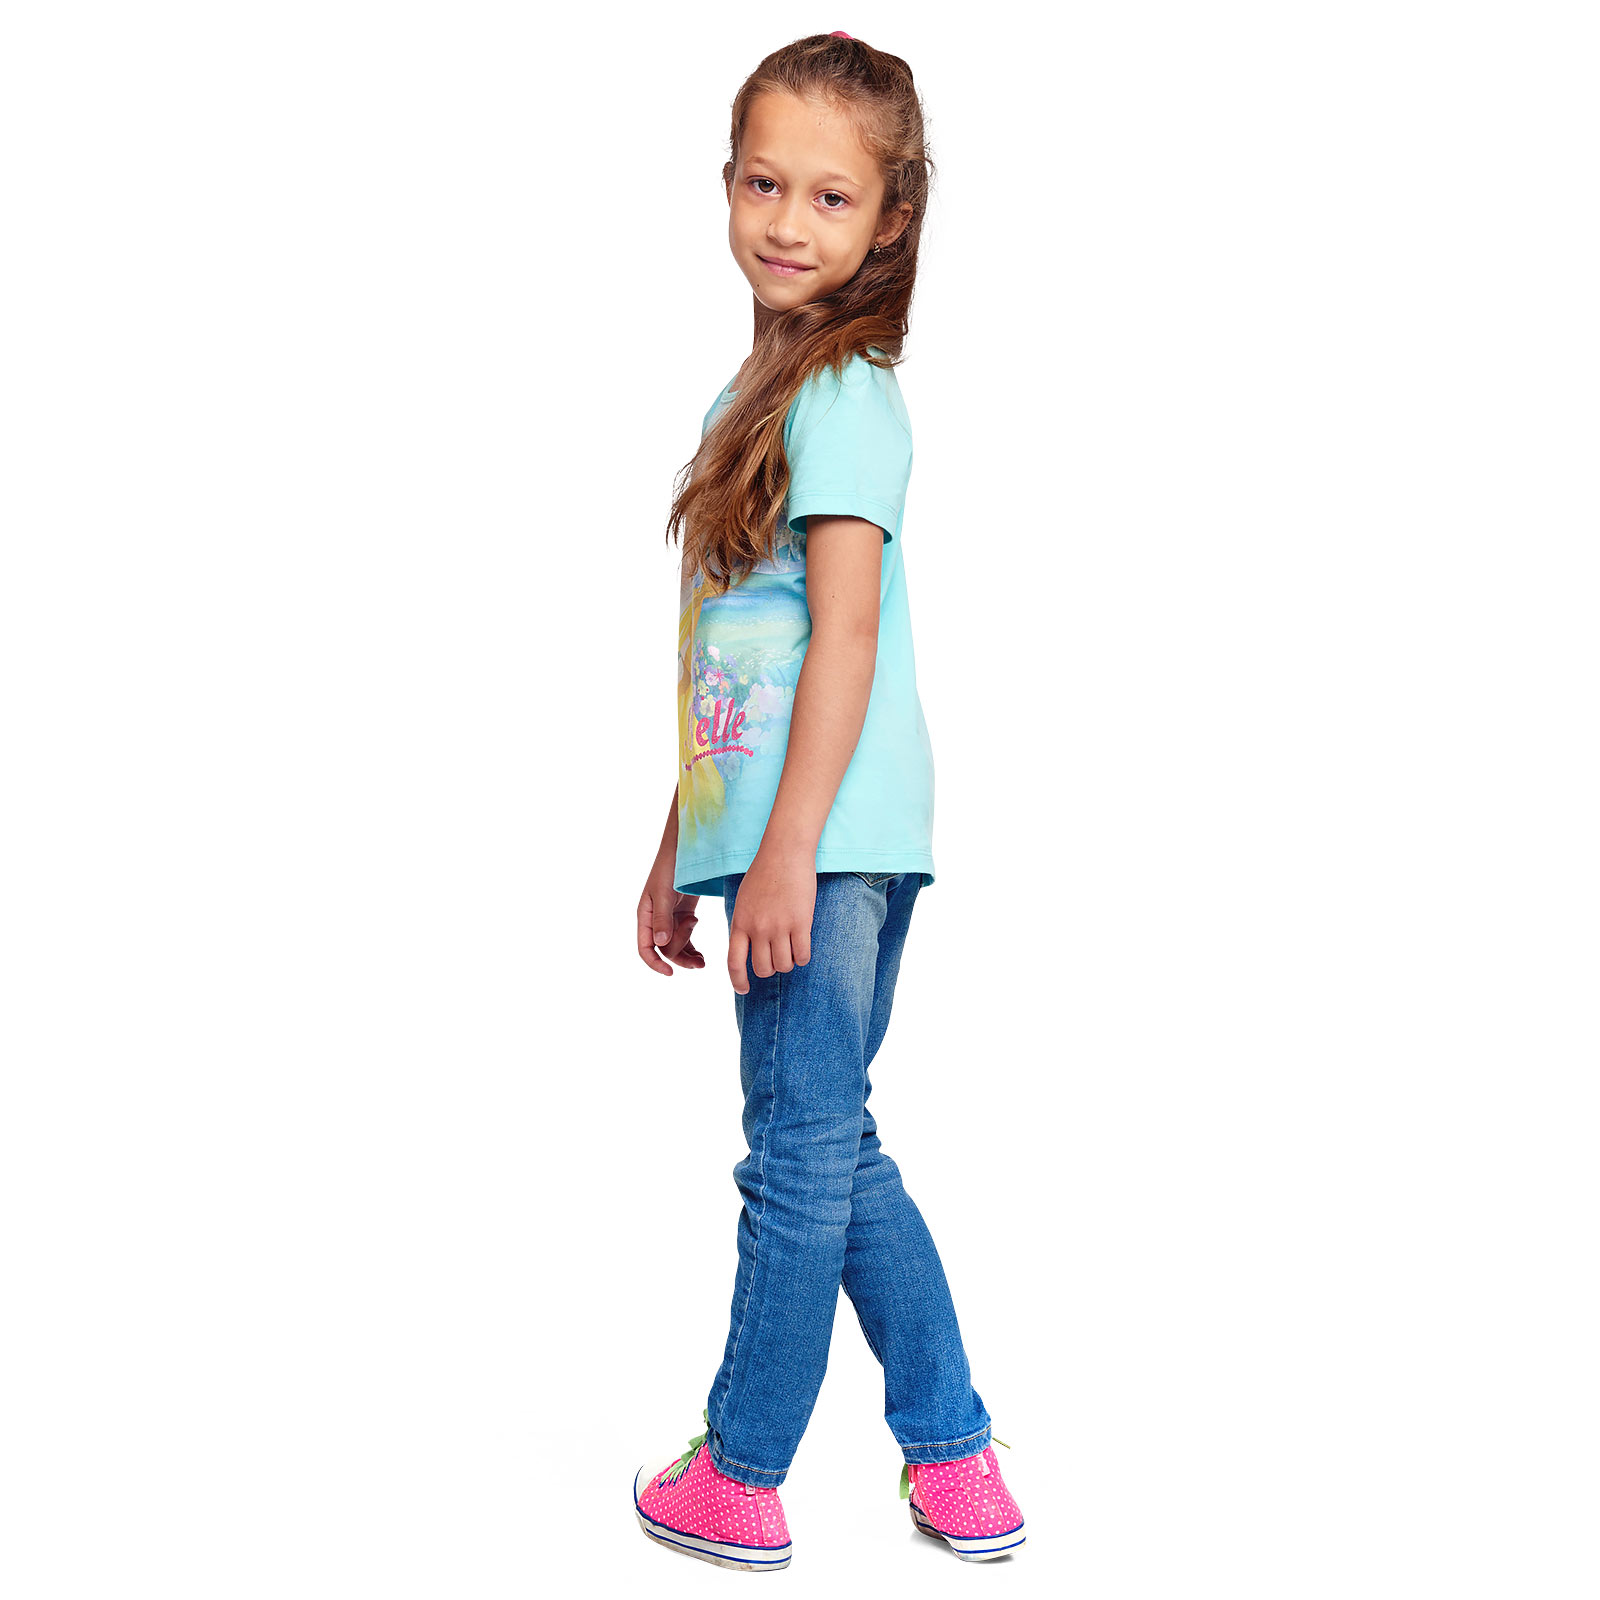 La Belle et la Bête - T-shirt pour enfants Belle turquoise